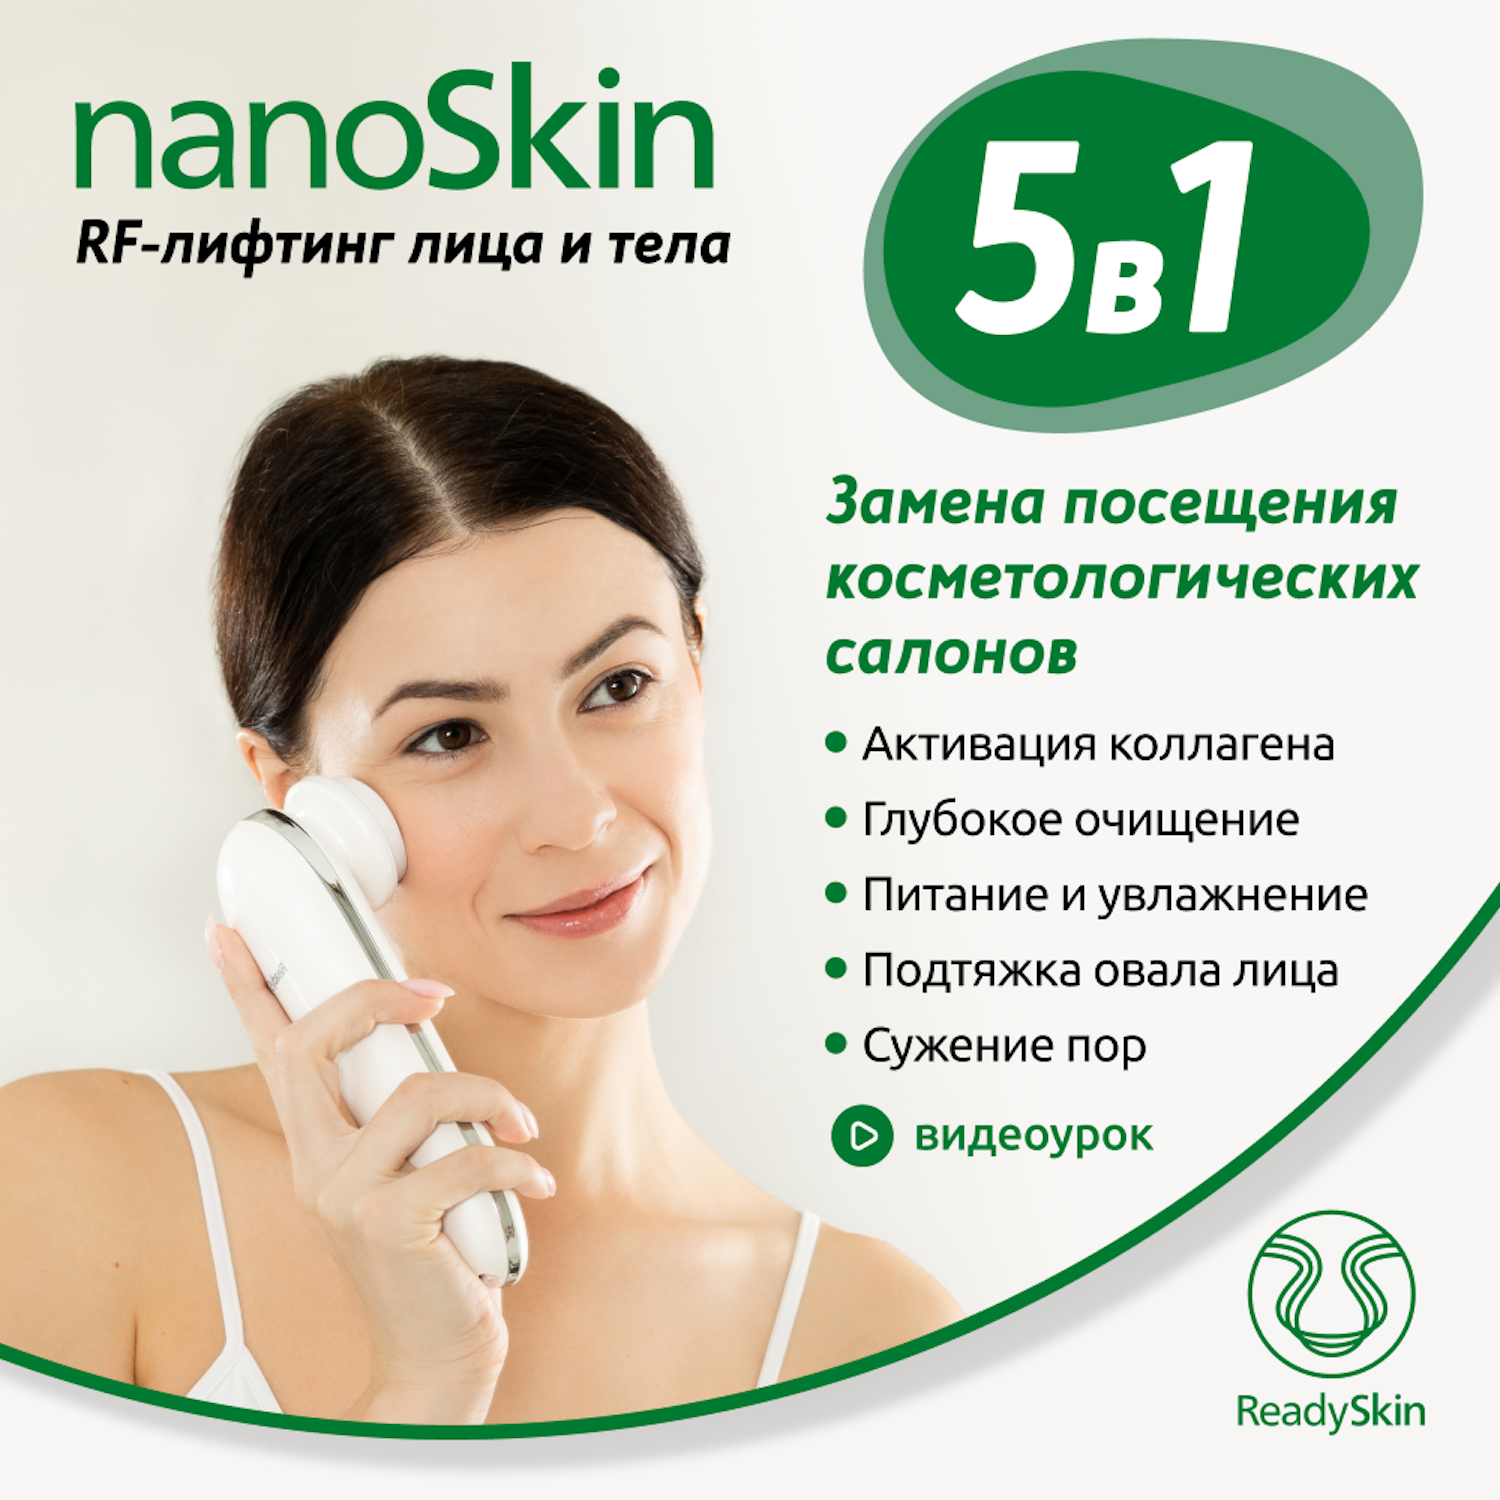 Прибор ReadySkin для RF-лифтинга лица и тела nanoSkin - фото 2